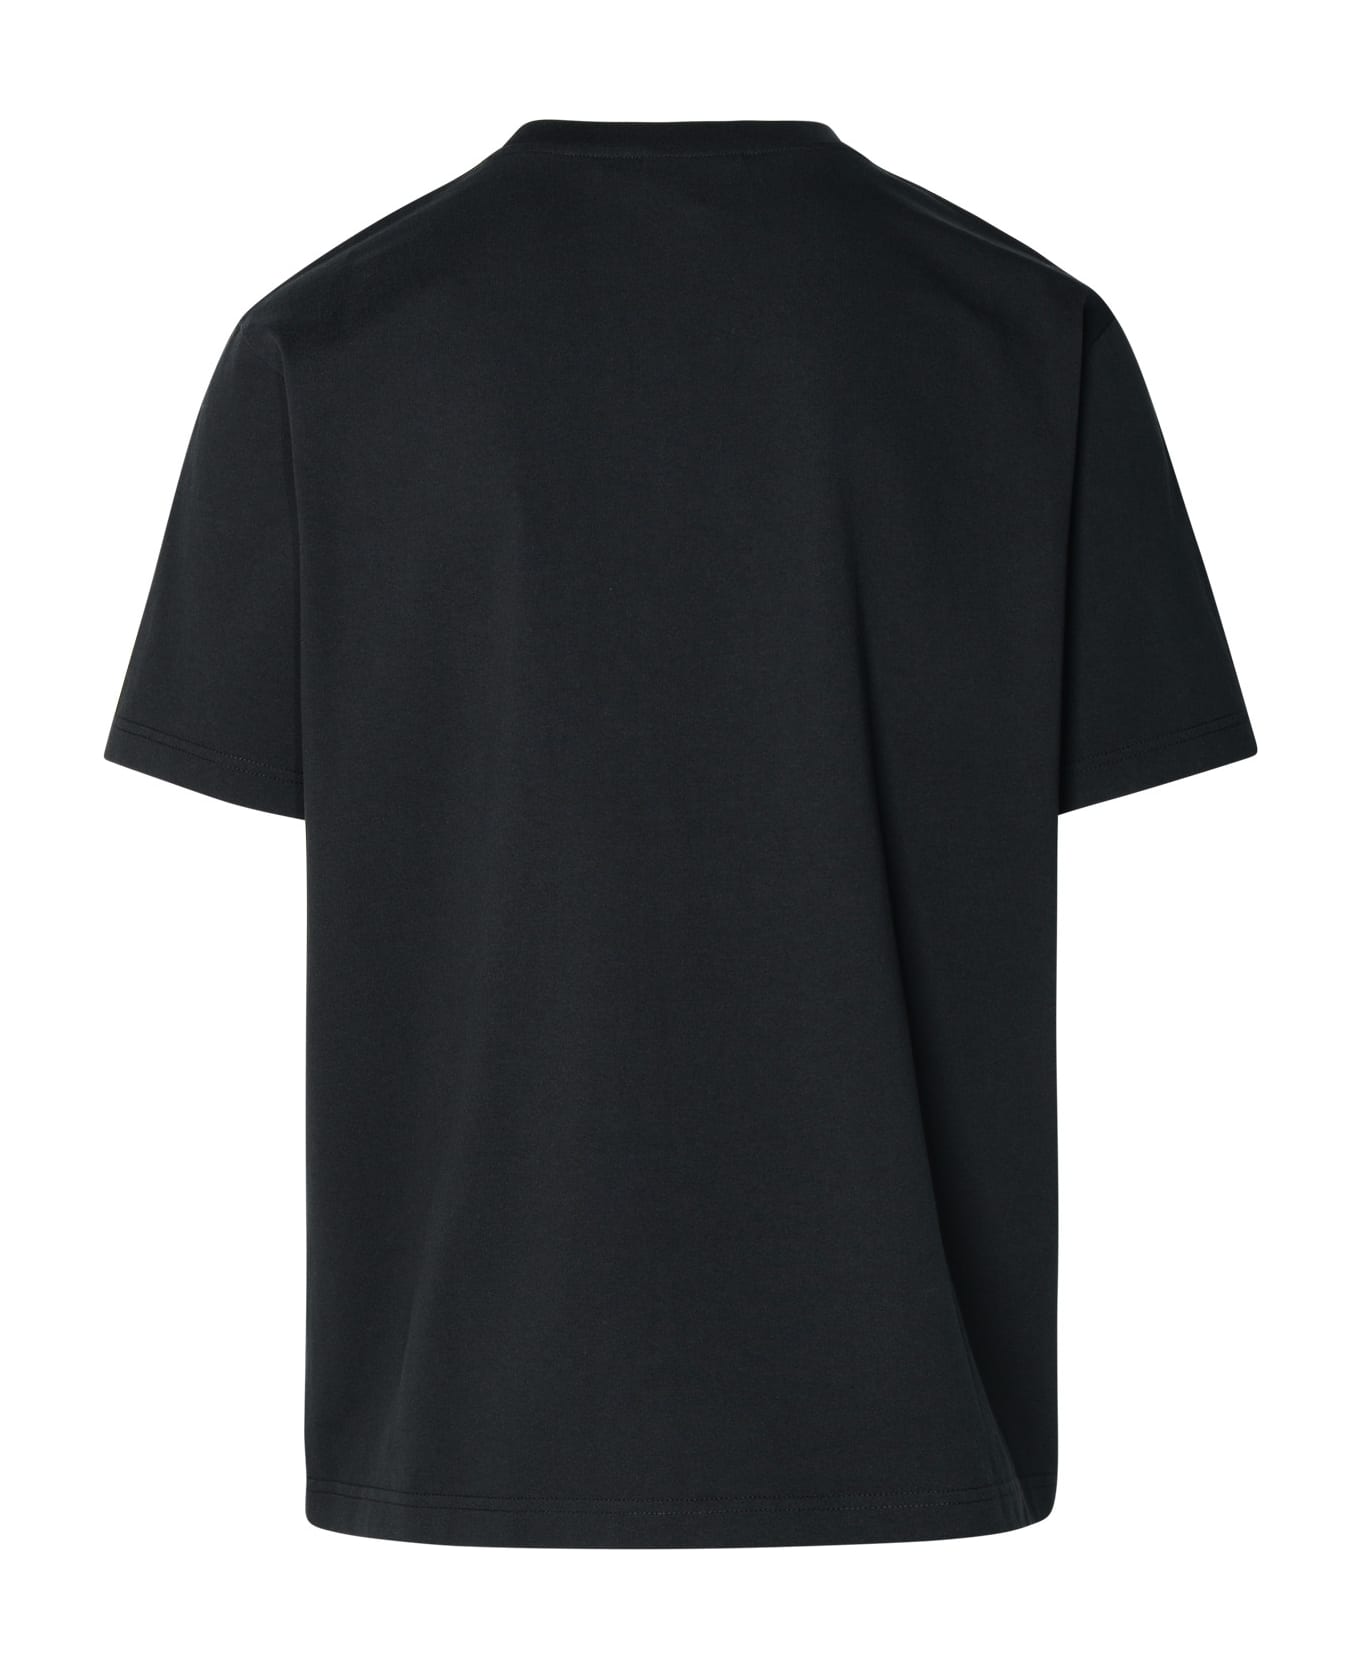 Maison Kitsuné Black Cotton T-shirt - Black White